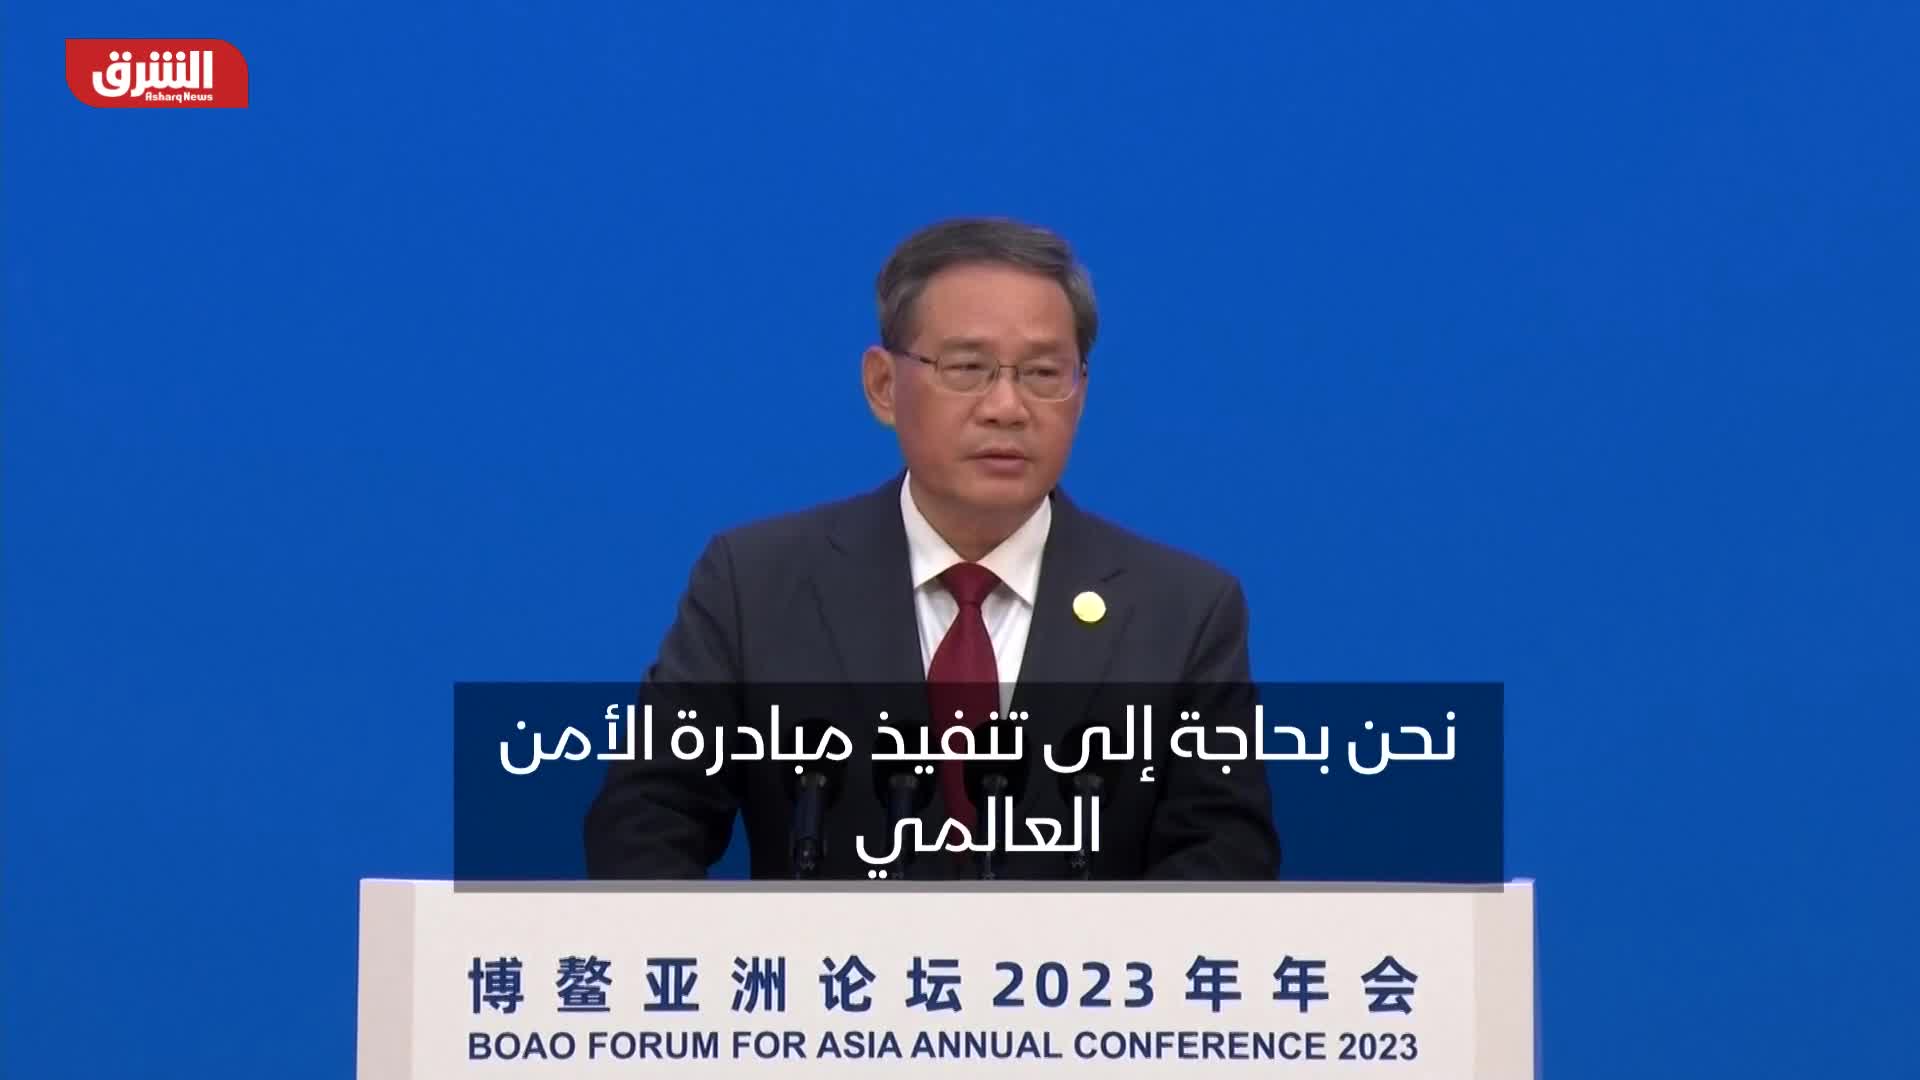 رئيس وزراء الصين: نحن بحاجة لتنفيذ مبادرة الأمن العالمي والالتزام بحسن الجوار